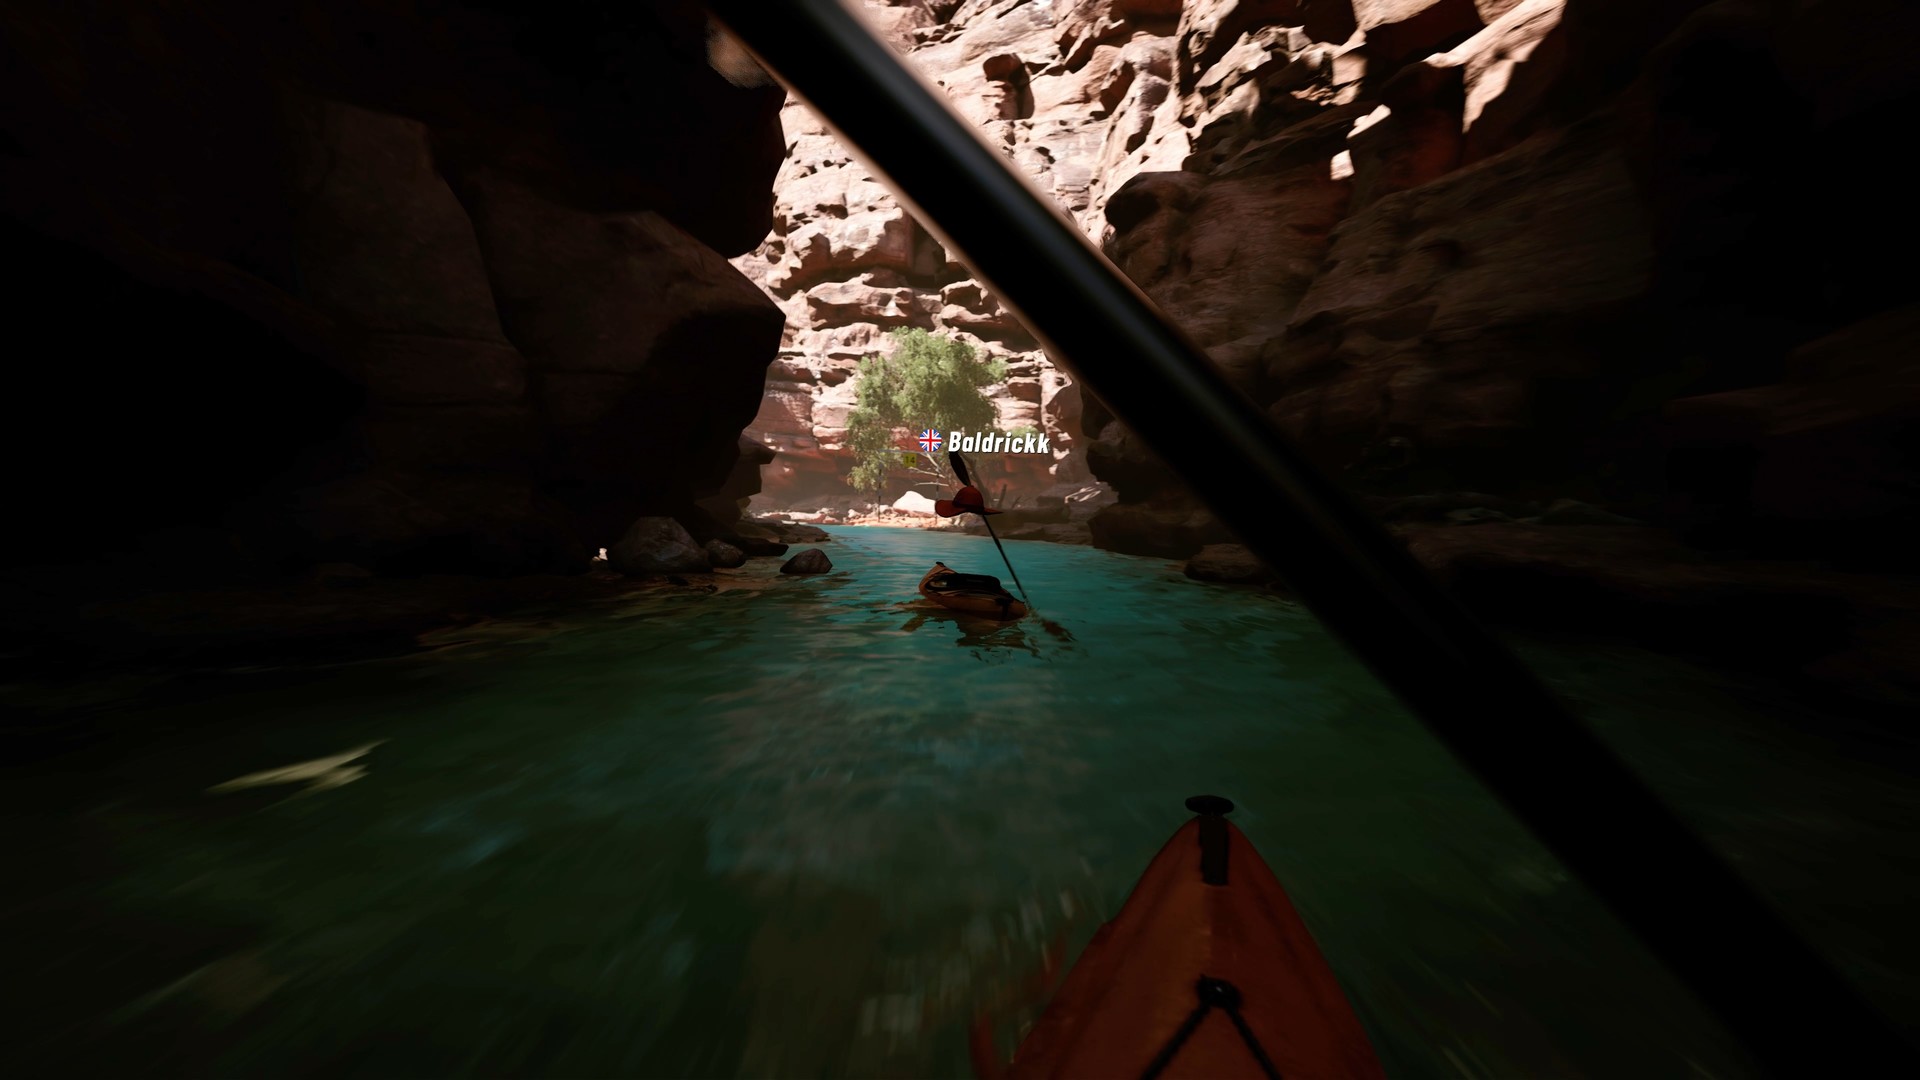 Kayak VR: Mirage Free Download